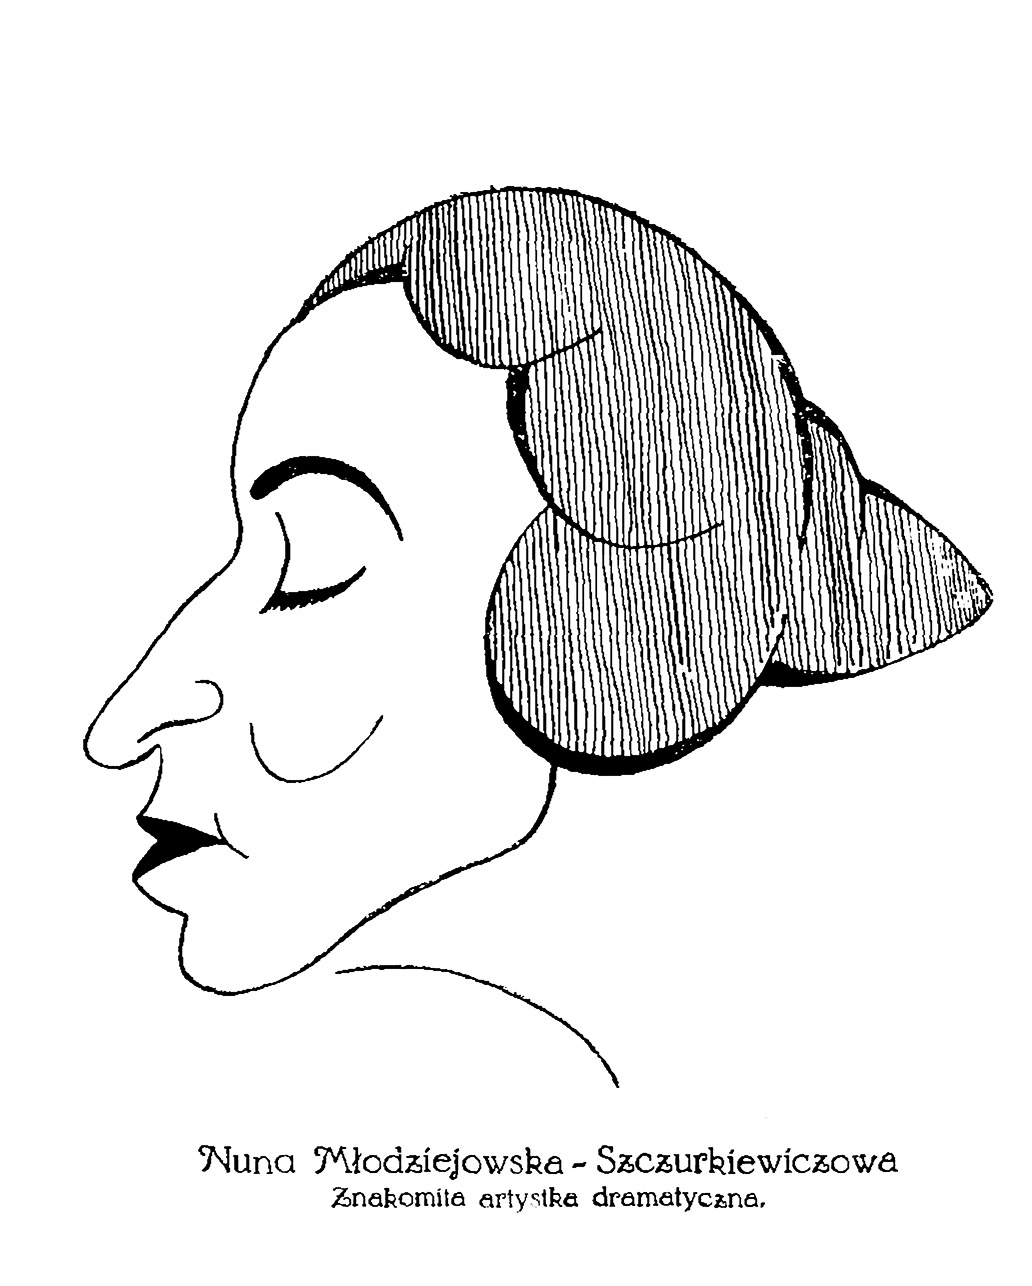 Nuna Młodziejowska-Szczurkiewiczowa - karykatura Zygmunta Szpingiera, „Salon Literacki” 1922 z. 1